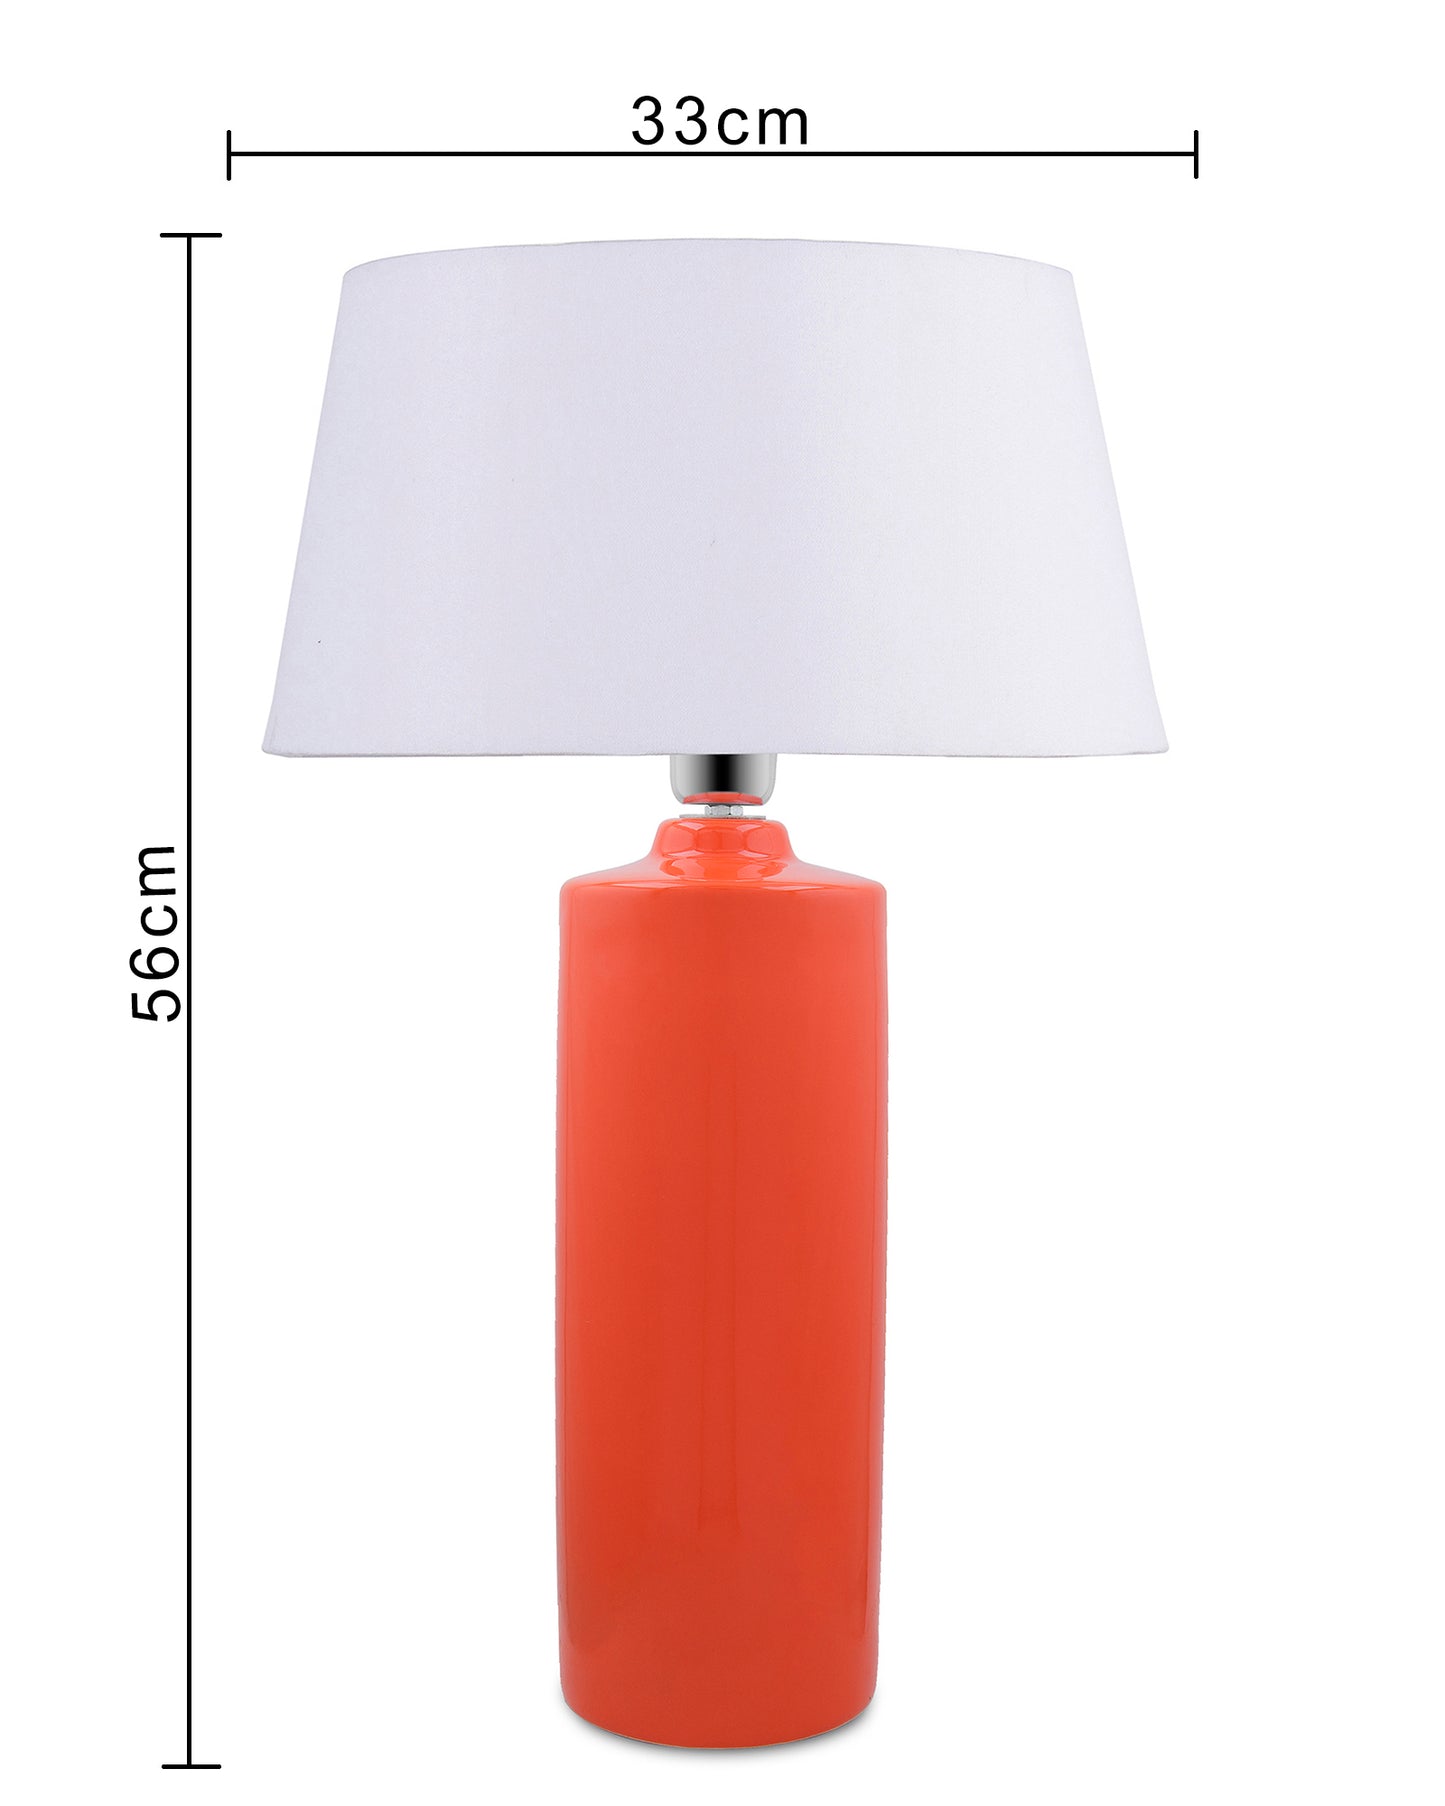 Ceramic Base Orange Table Lamp with Drum Shade, LED Bulb